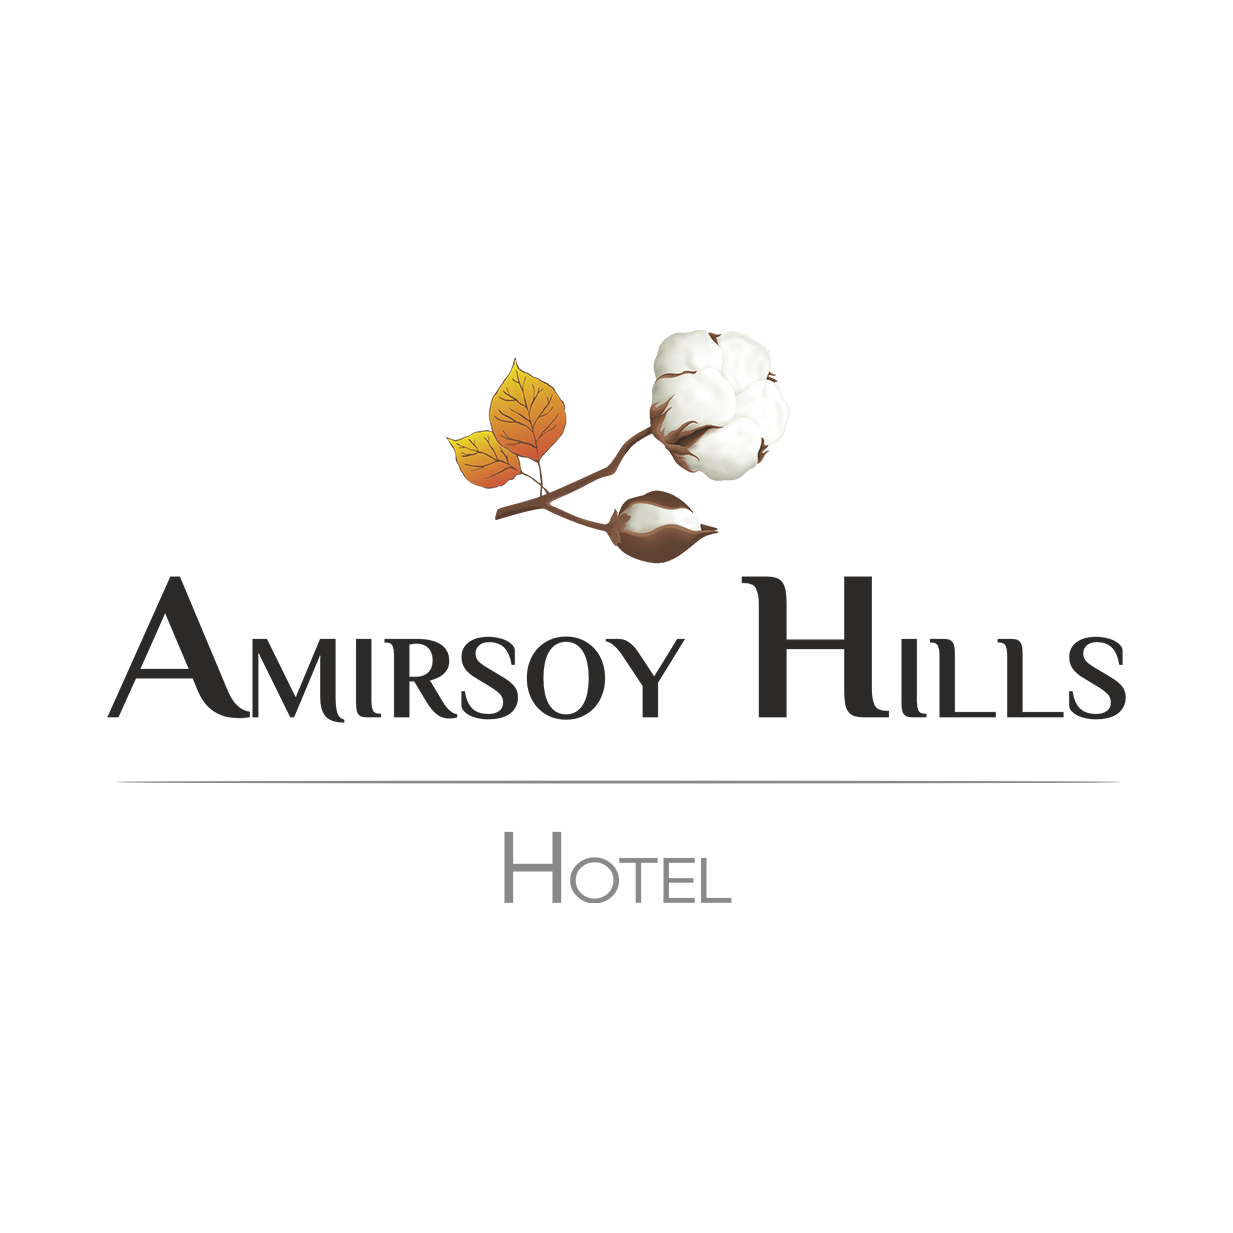 Amirsoy Hills